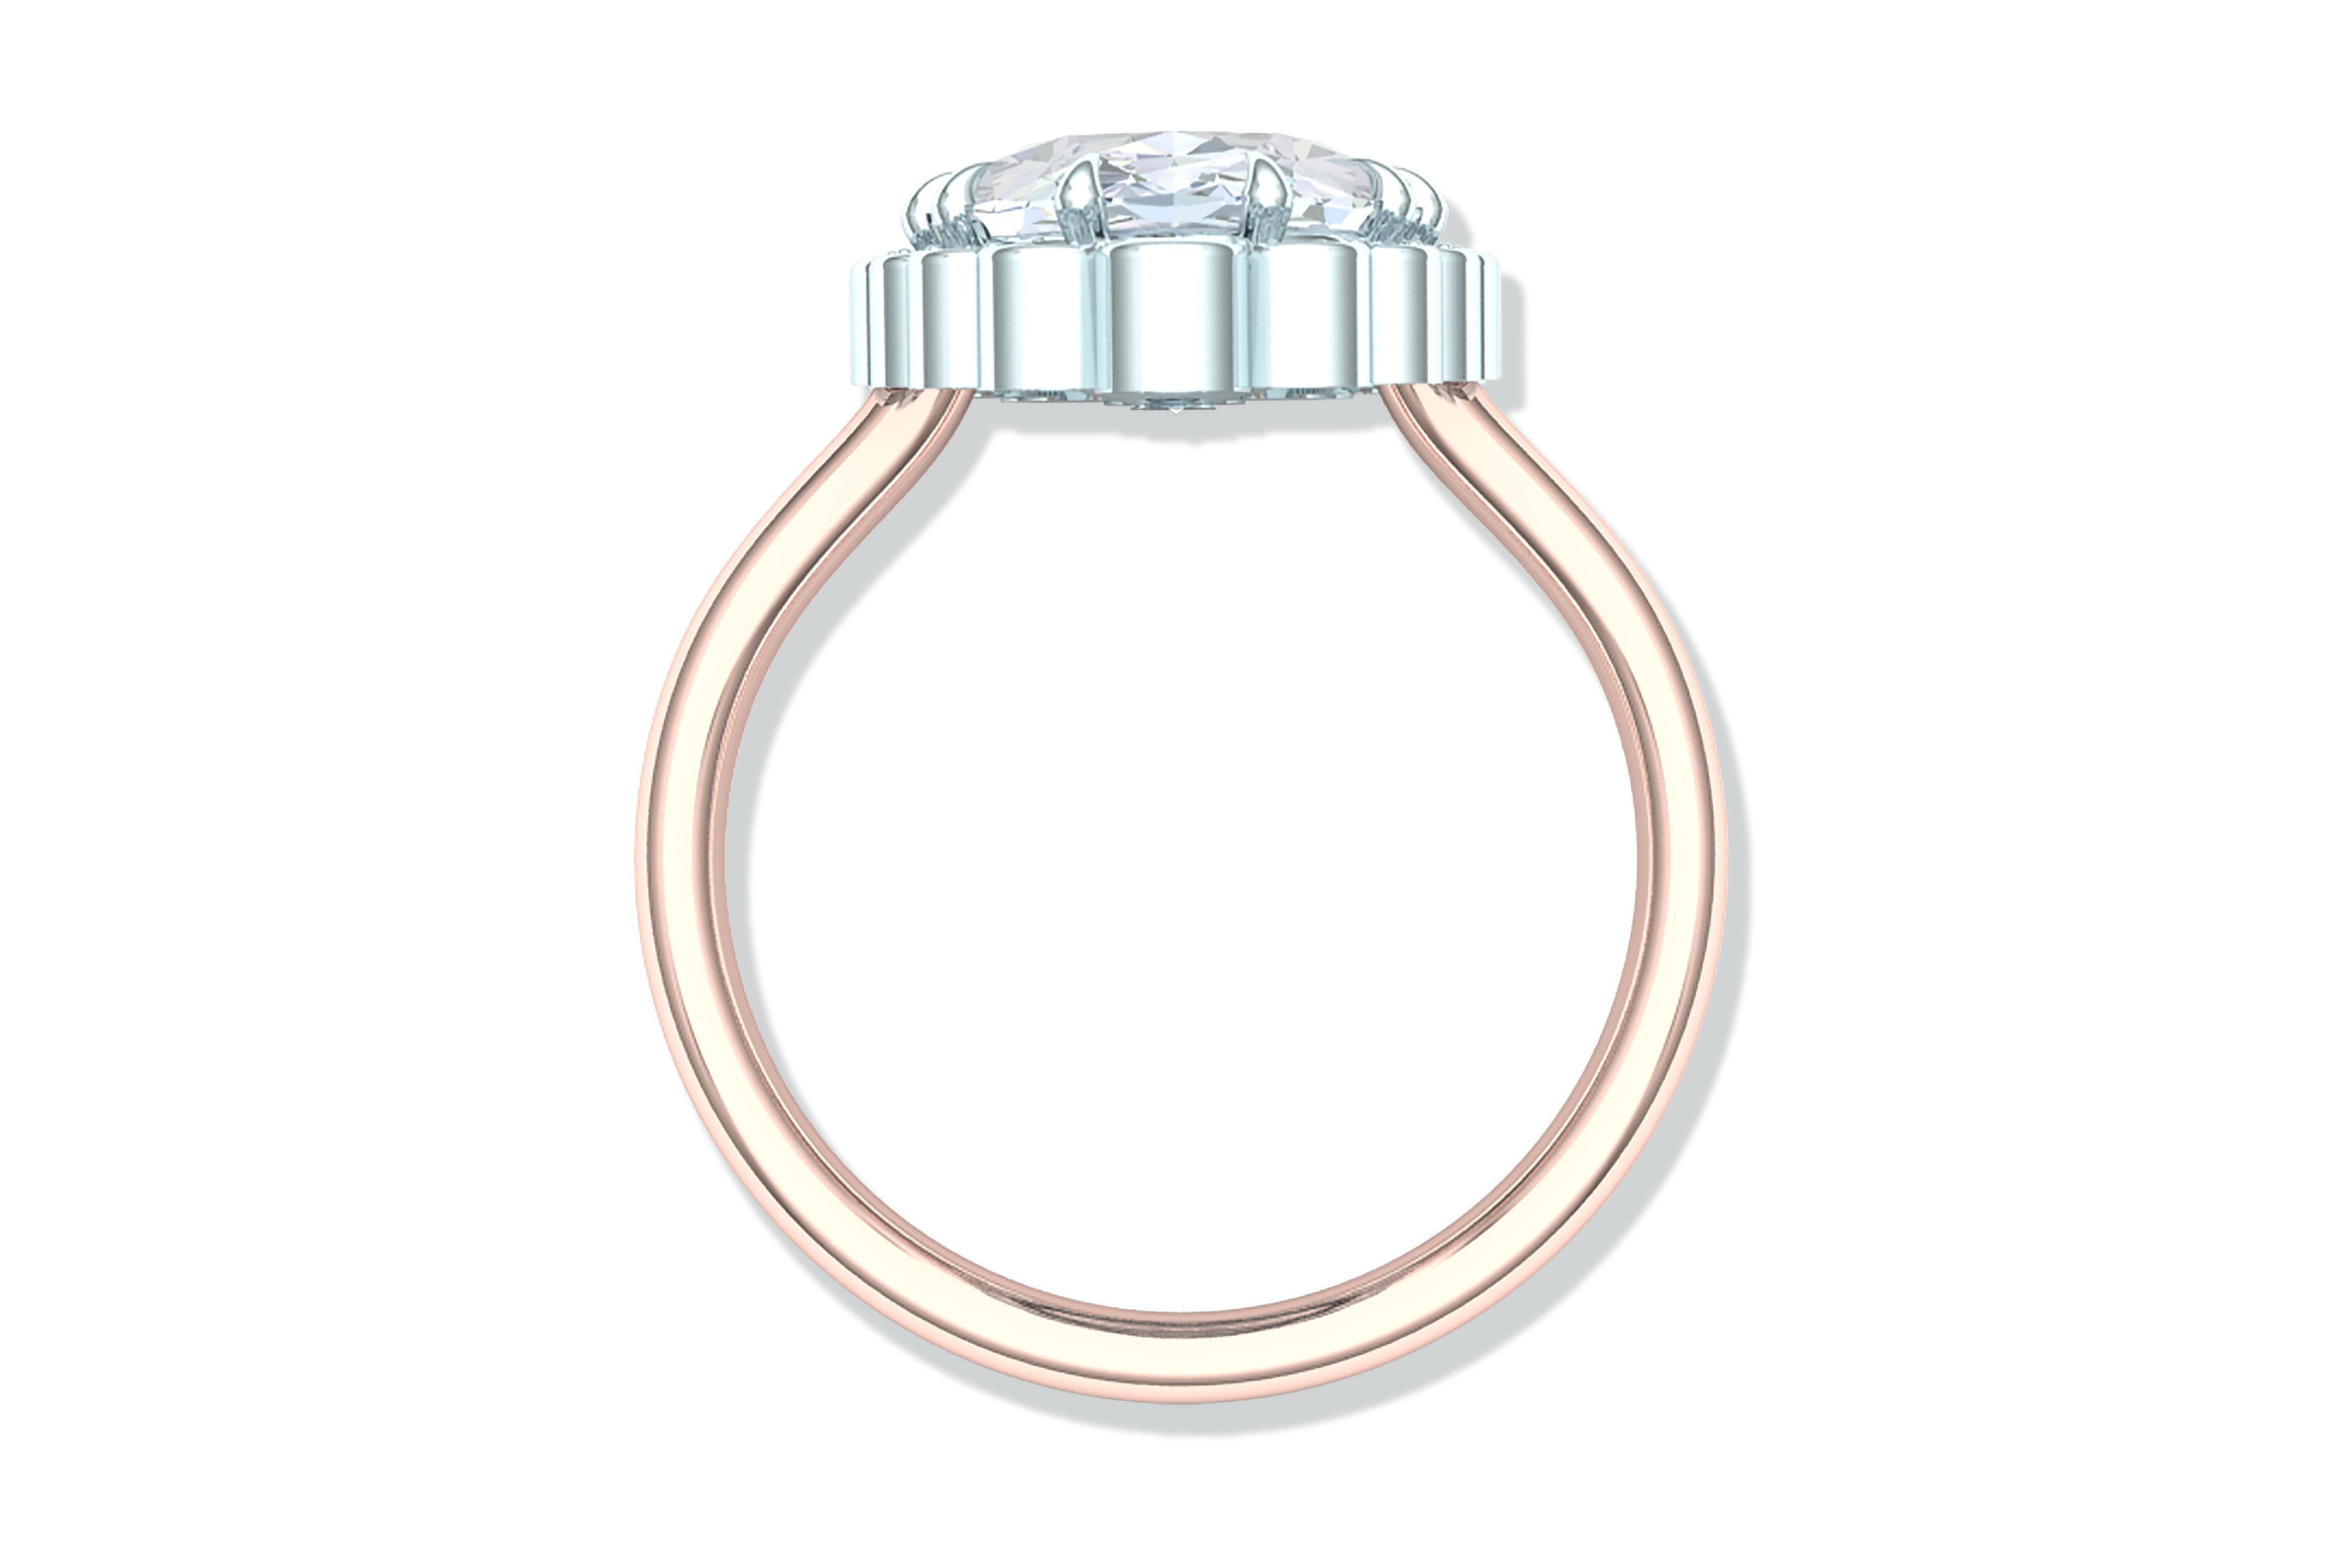 1.5 oval carat diamond ring